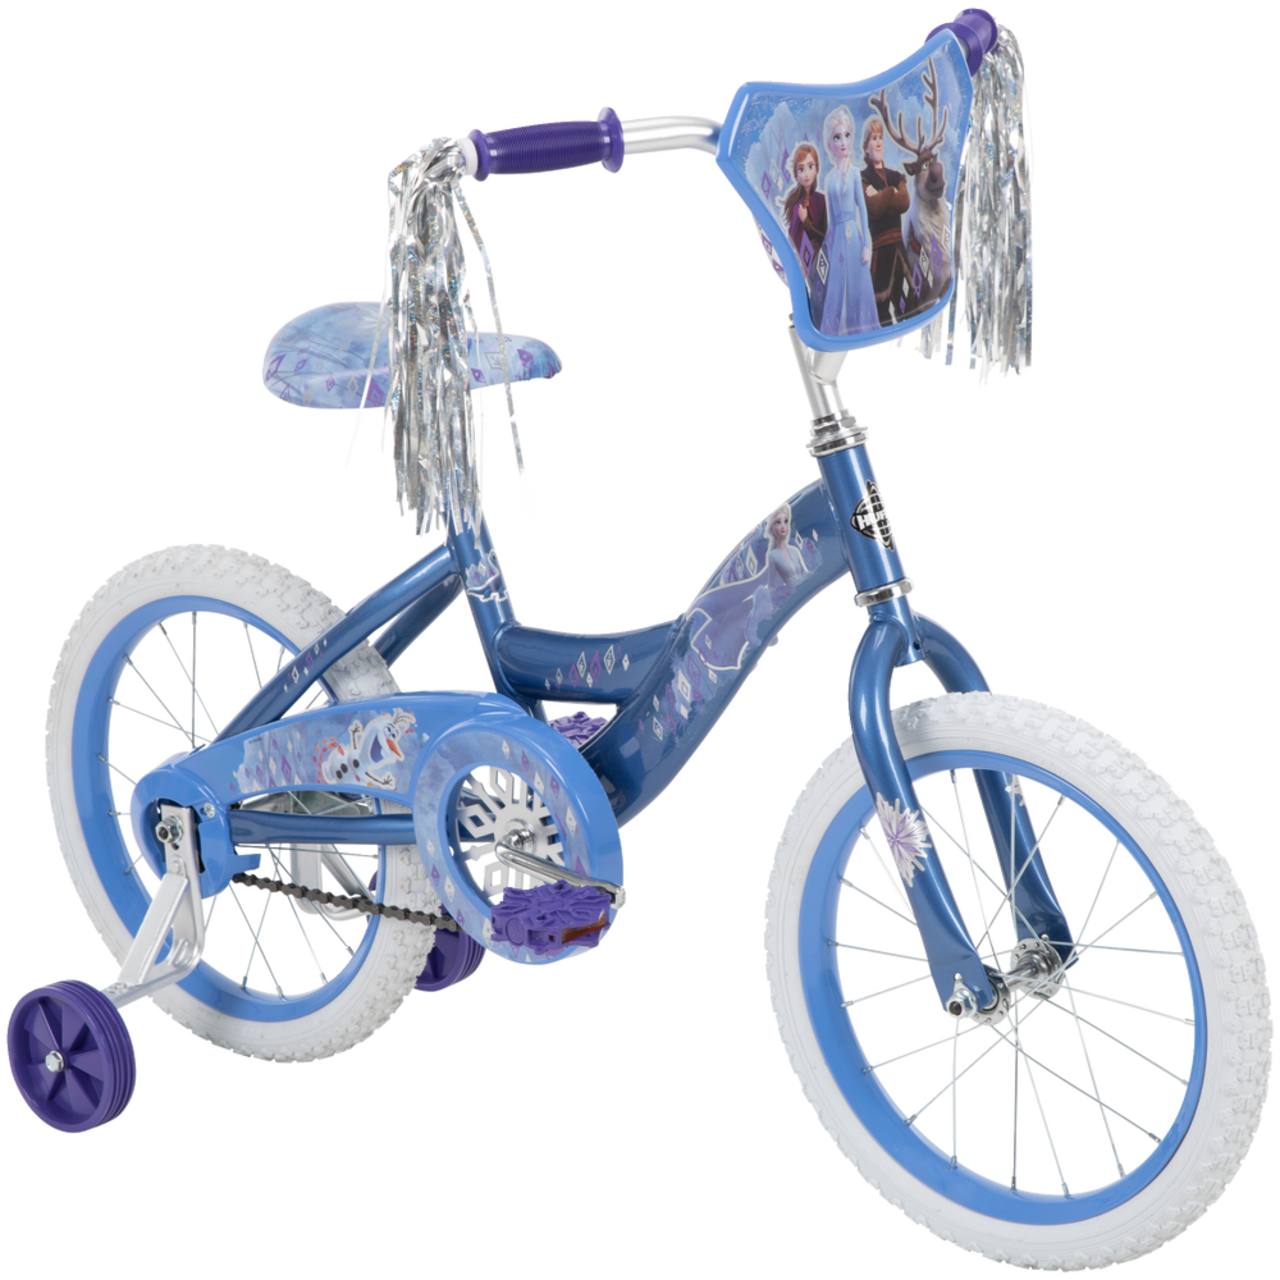 Vélo Disney La Reine des neiges pour enfants, 16 po, bleu glacier/blanc